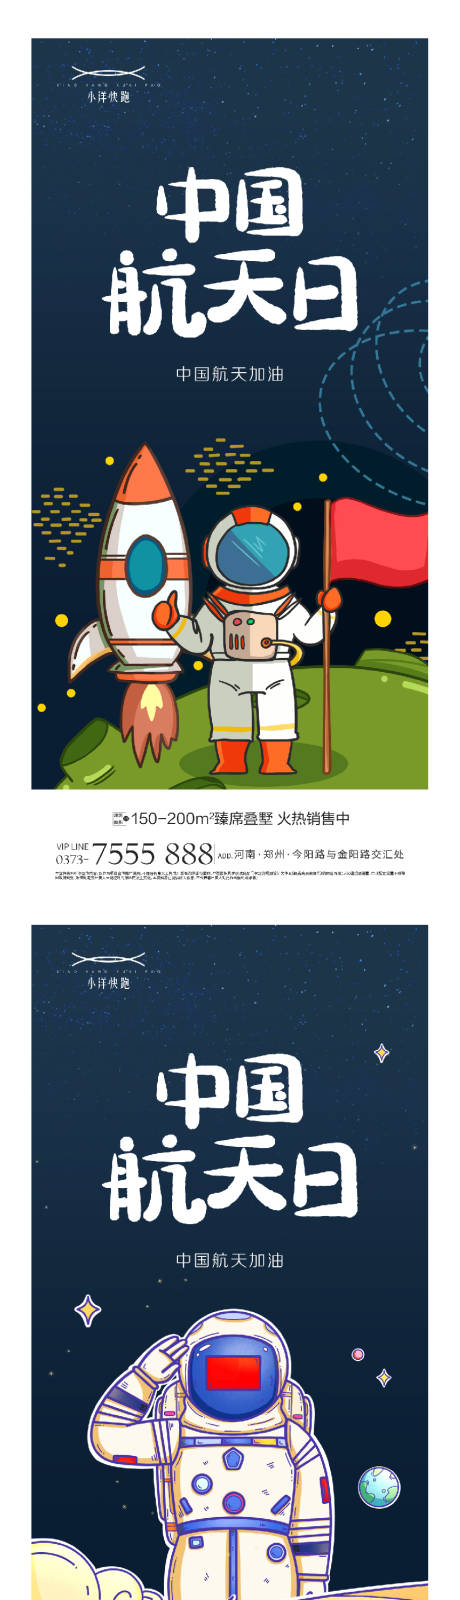 中国航空日插画系列海报